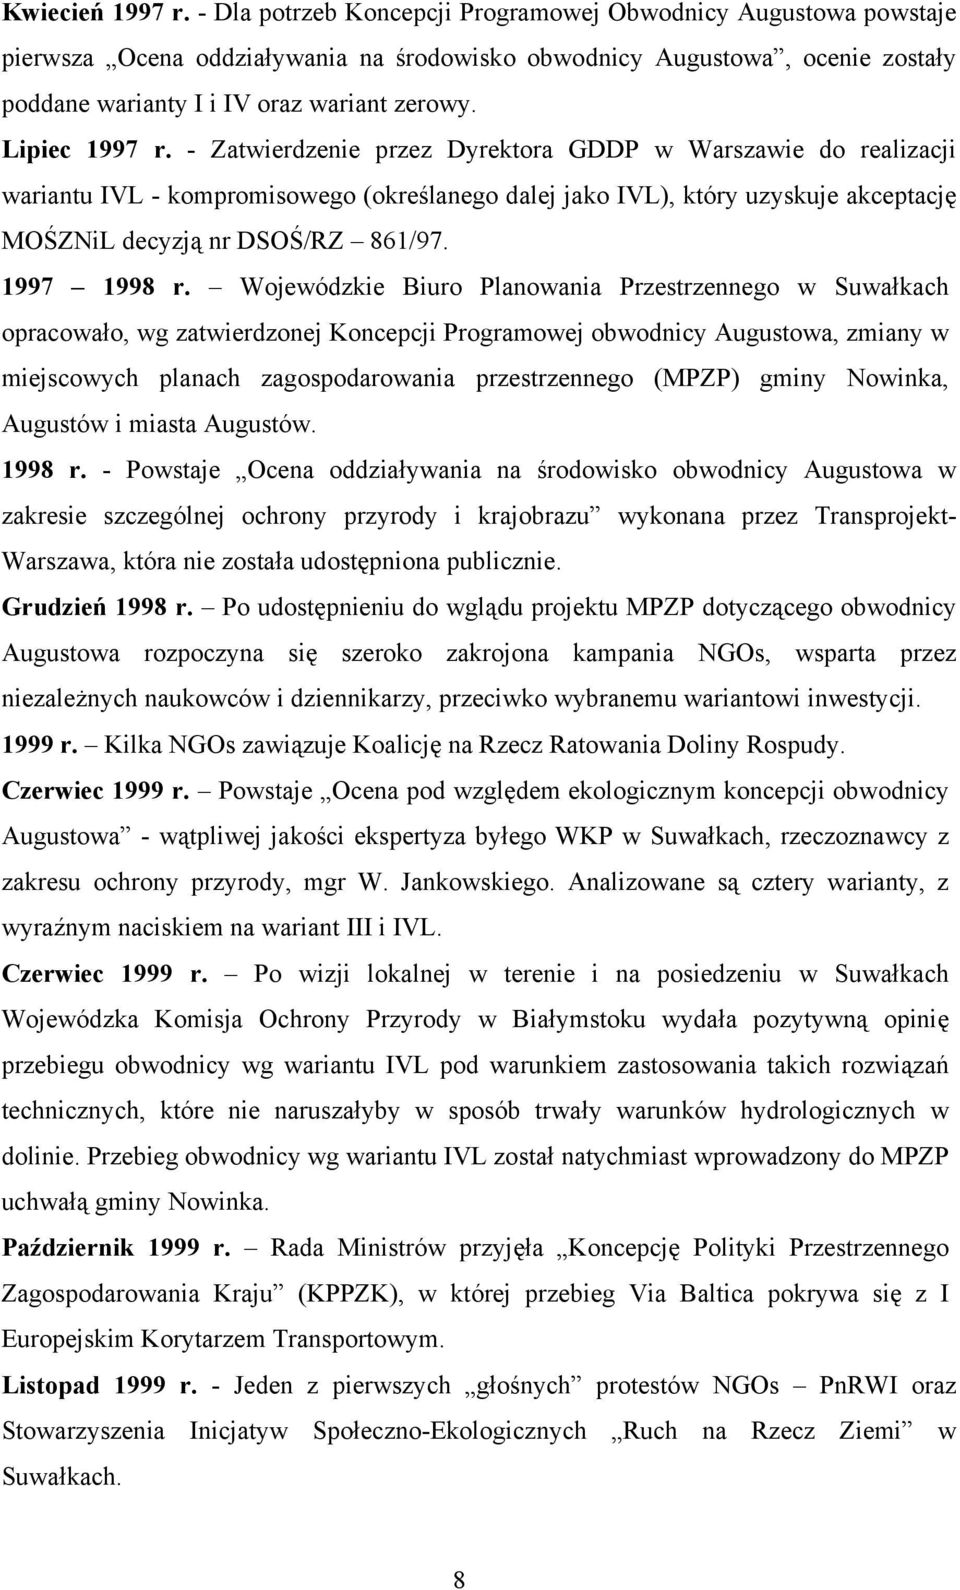 Lipiec 1997 r. - Zatwierdzenie przez Dyrektora GDDP w Warszawie do realizacji wariantu IVL - kompromisowego (określanego dalej jako IVL), który uzyskuje akceptację MOŚZNiL decyzją nr DSOŚ/RZ 861/97.